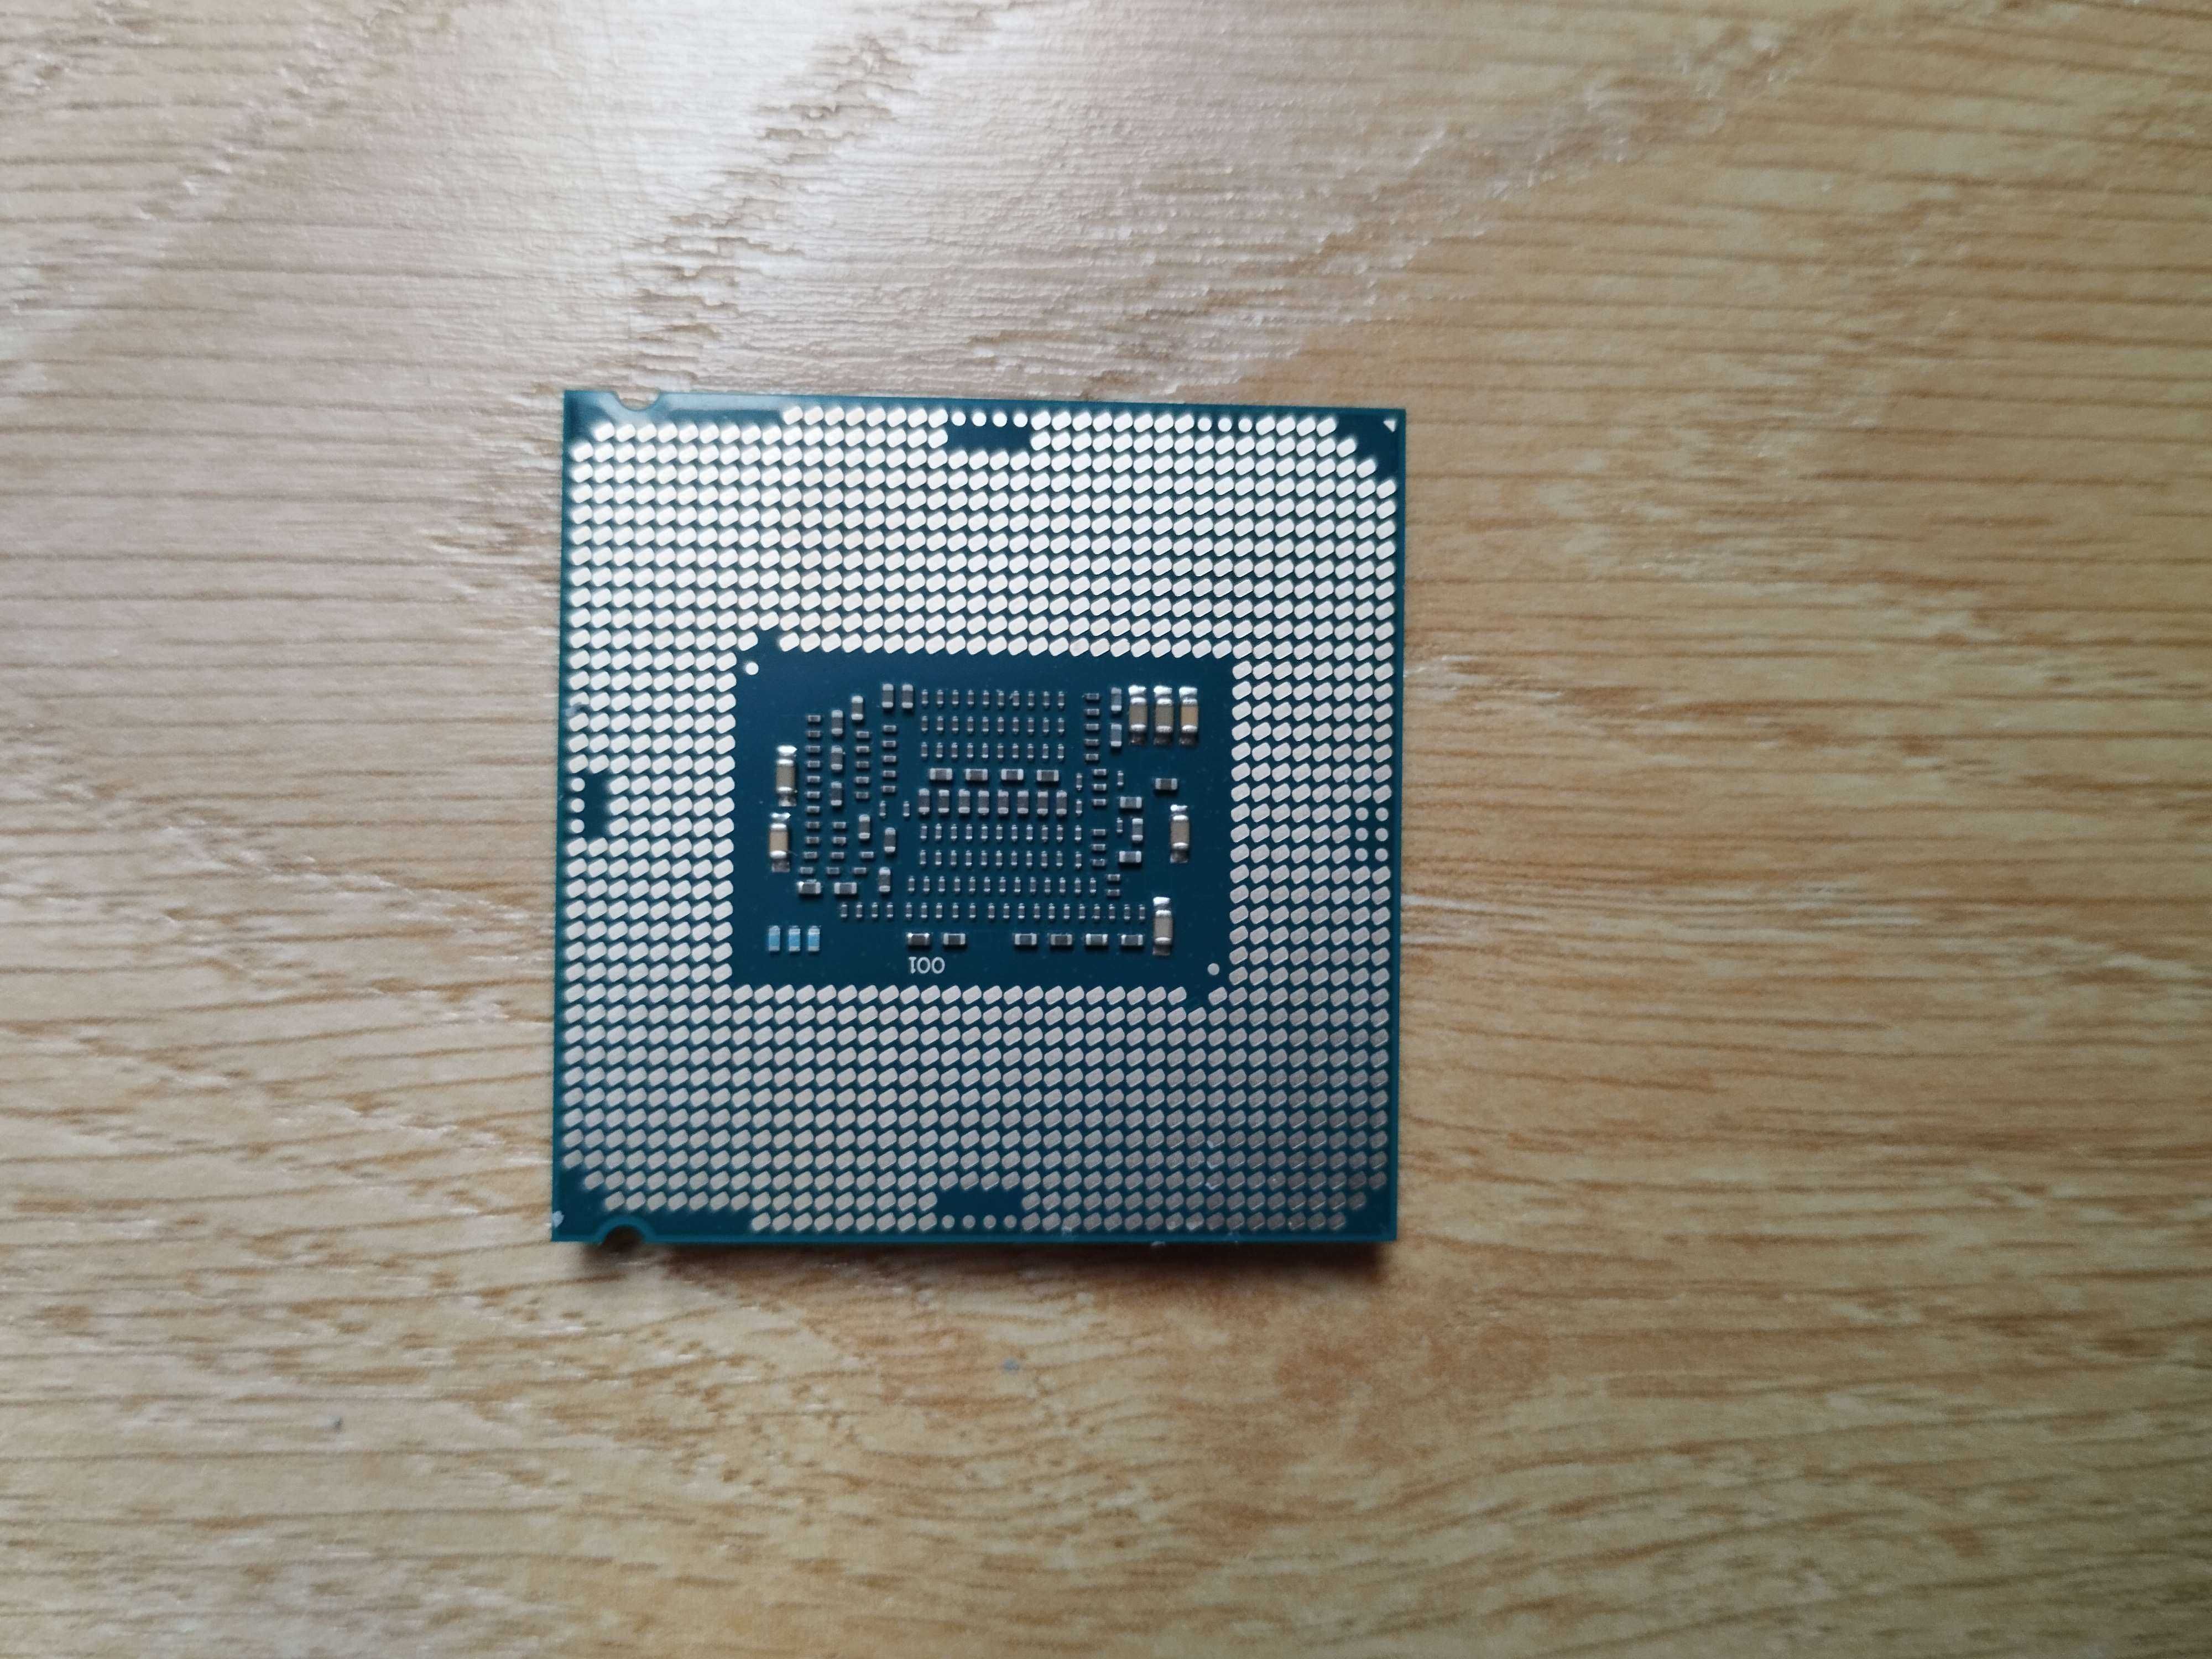 Procesor Intel i5-7600 3.50GHz